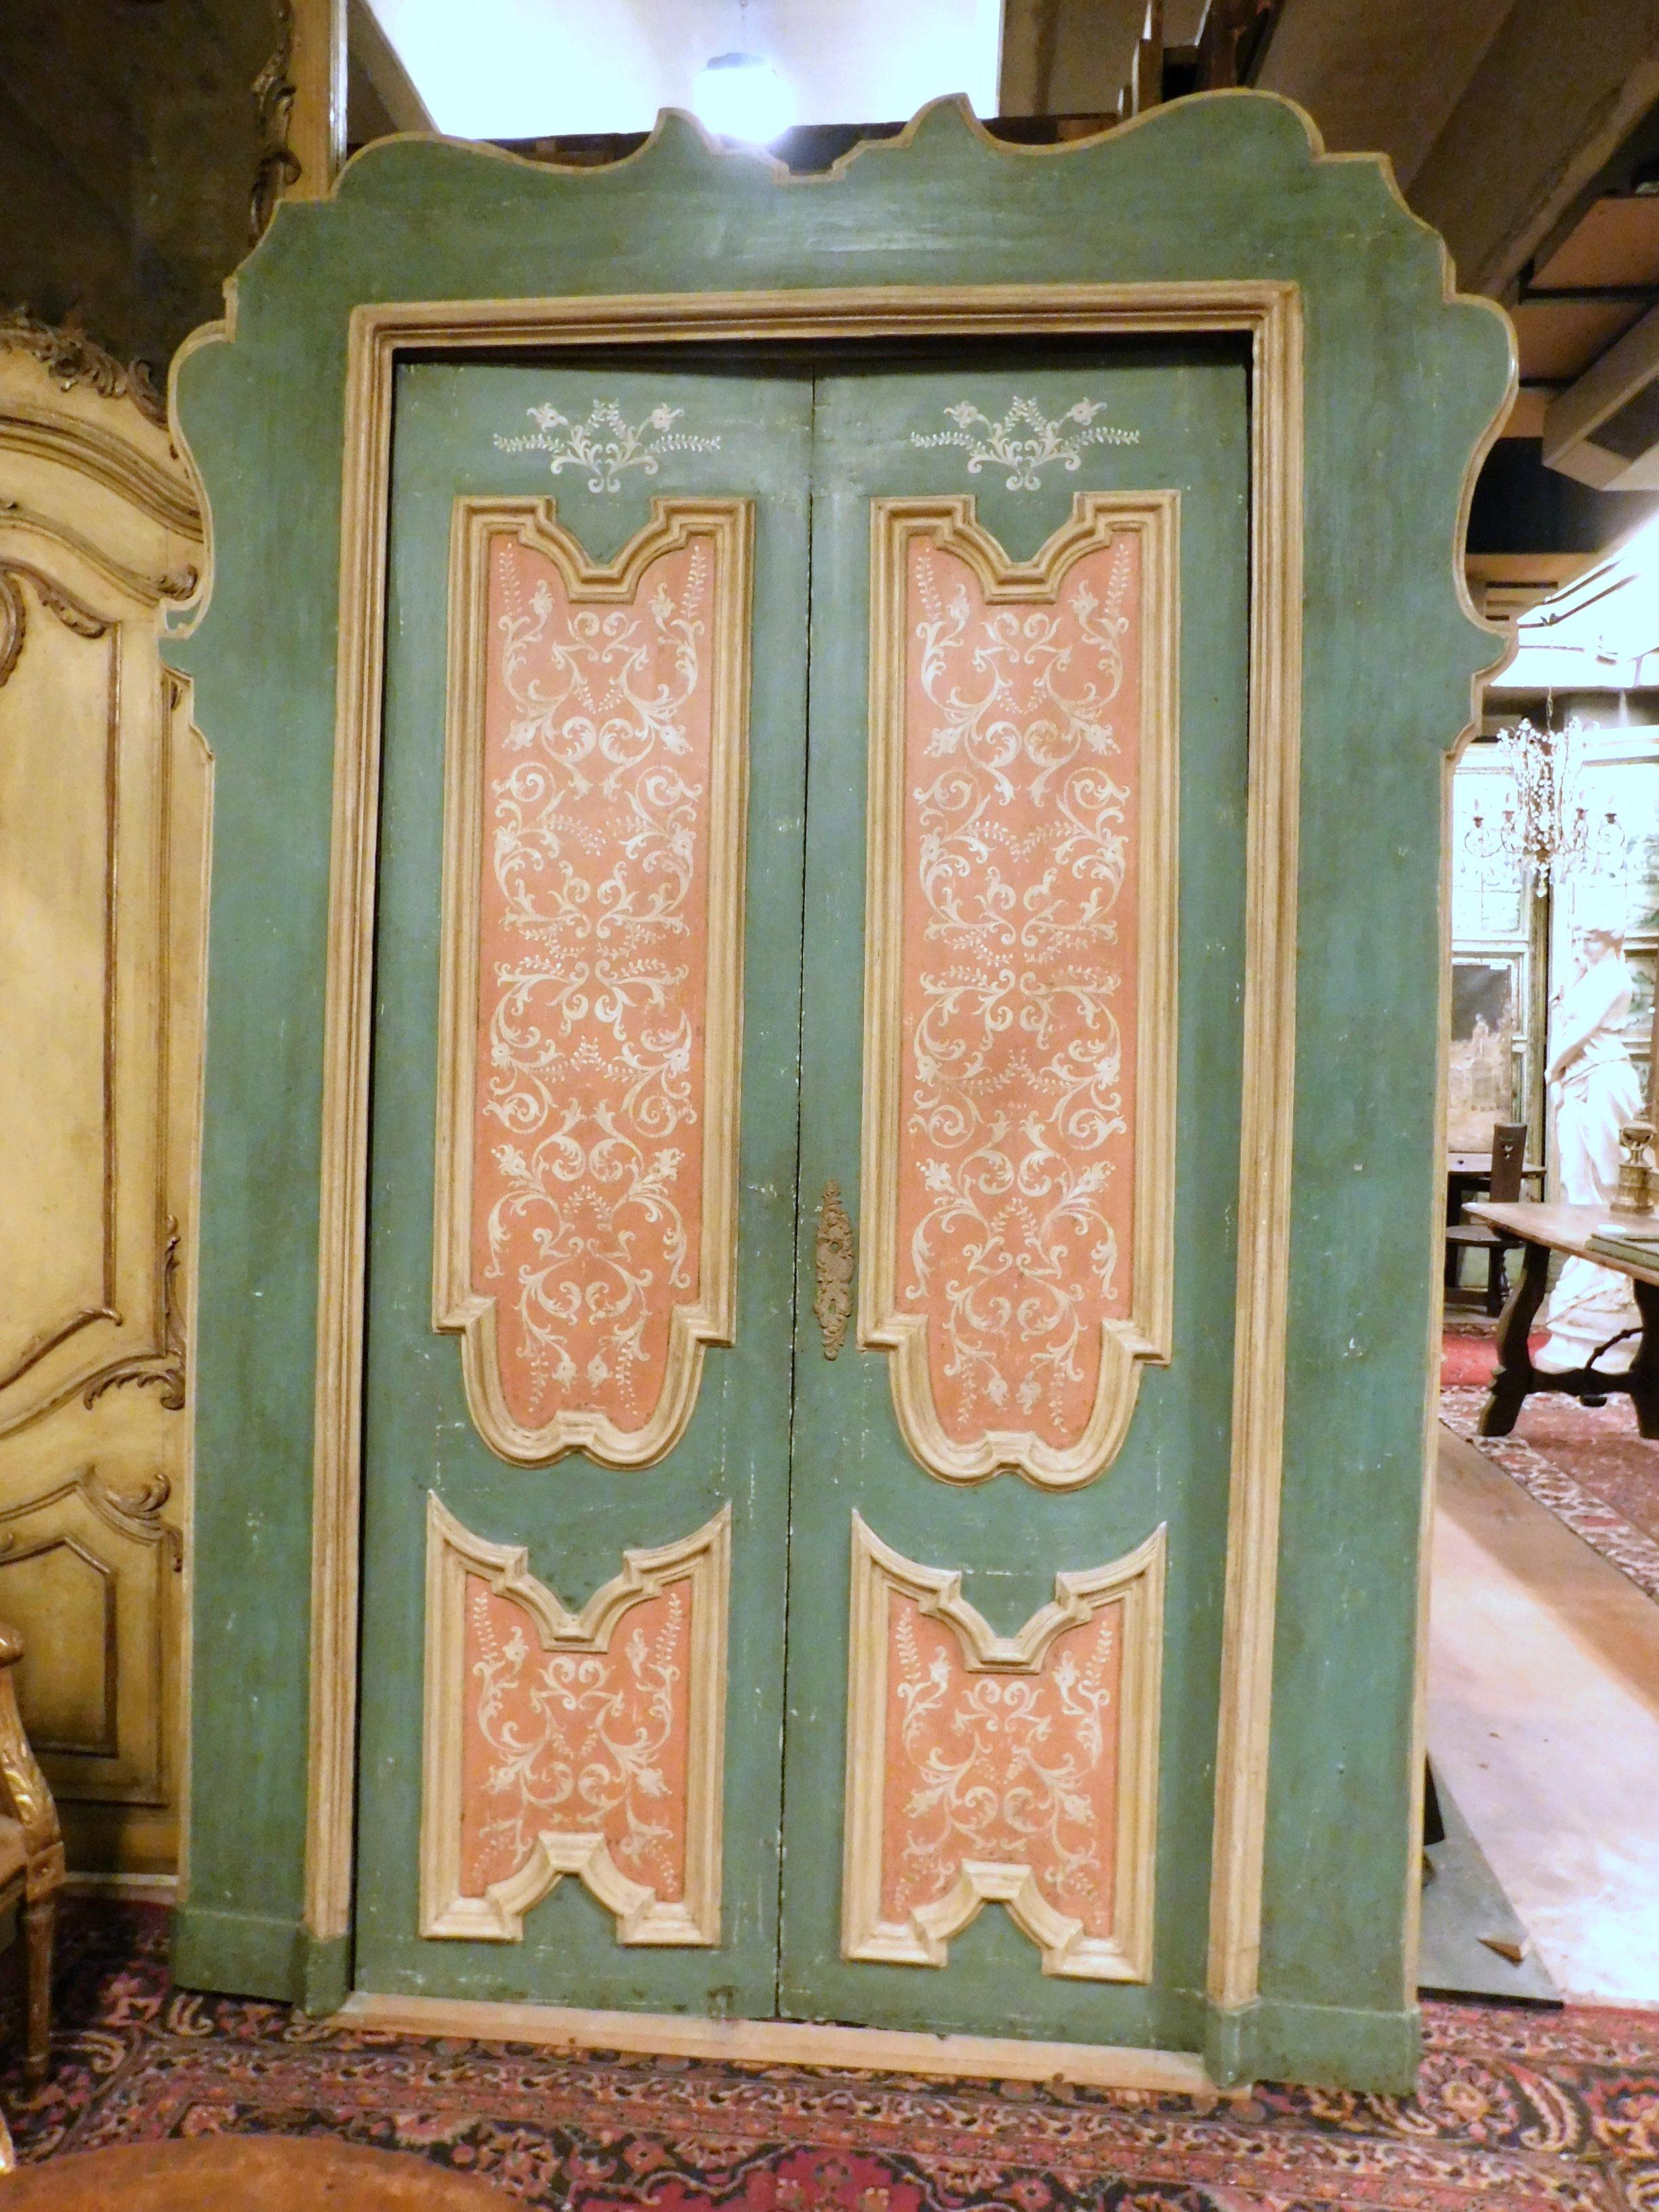 Antikes Paar Innentüren, handlackiert auf blauem und rosafarbenem Grund, mit weißer Bemalung, komplett mit originalem Wellenrahmen, typische Türen des 18. Jahrhunderts, die aus dem Saal eines bedeutenden Gebäudes im Zentrum von Rom (Italien)